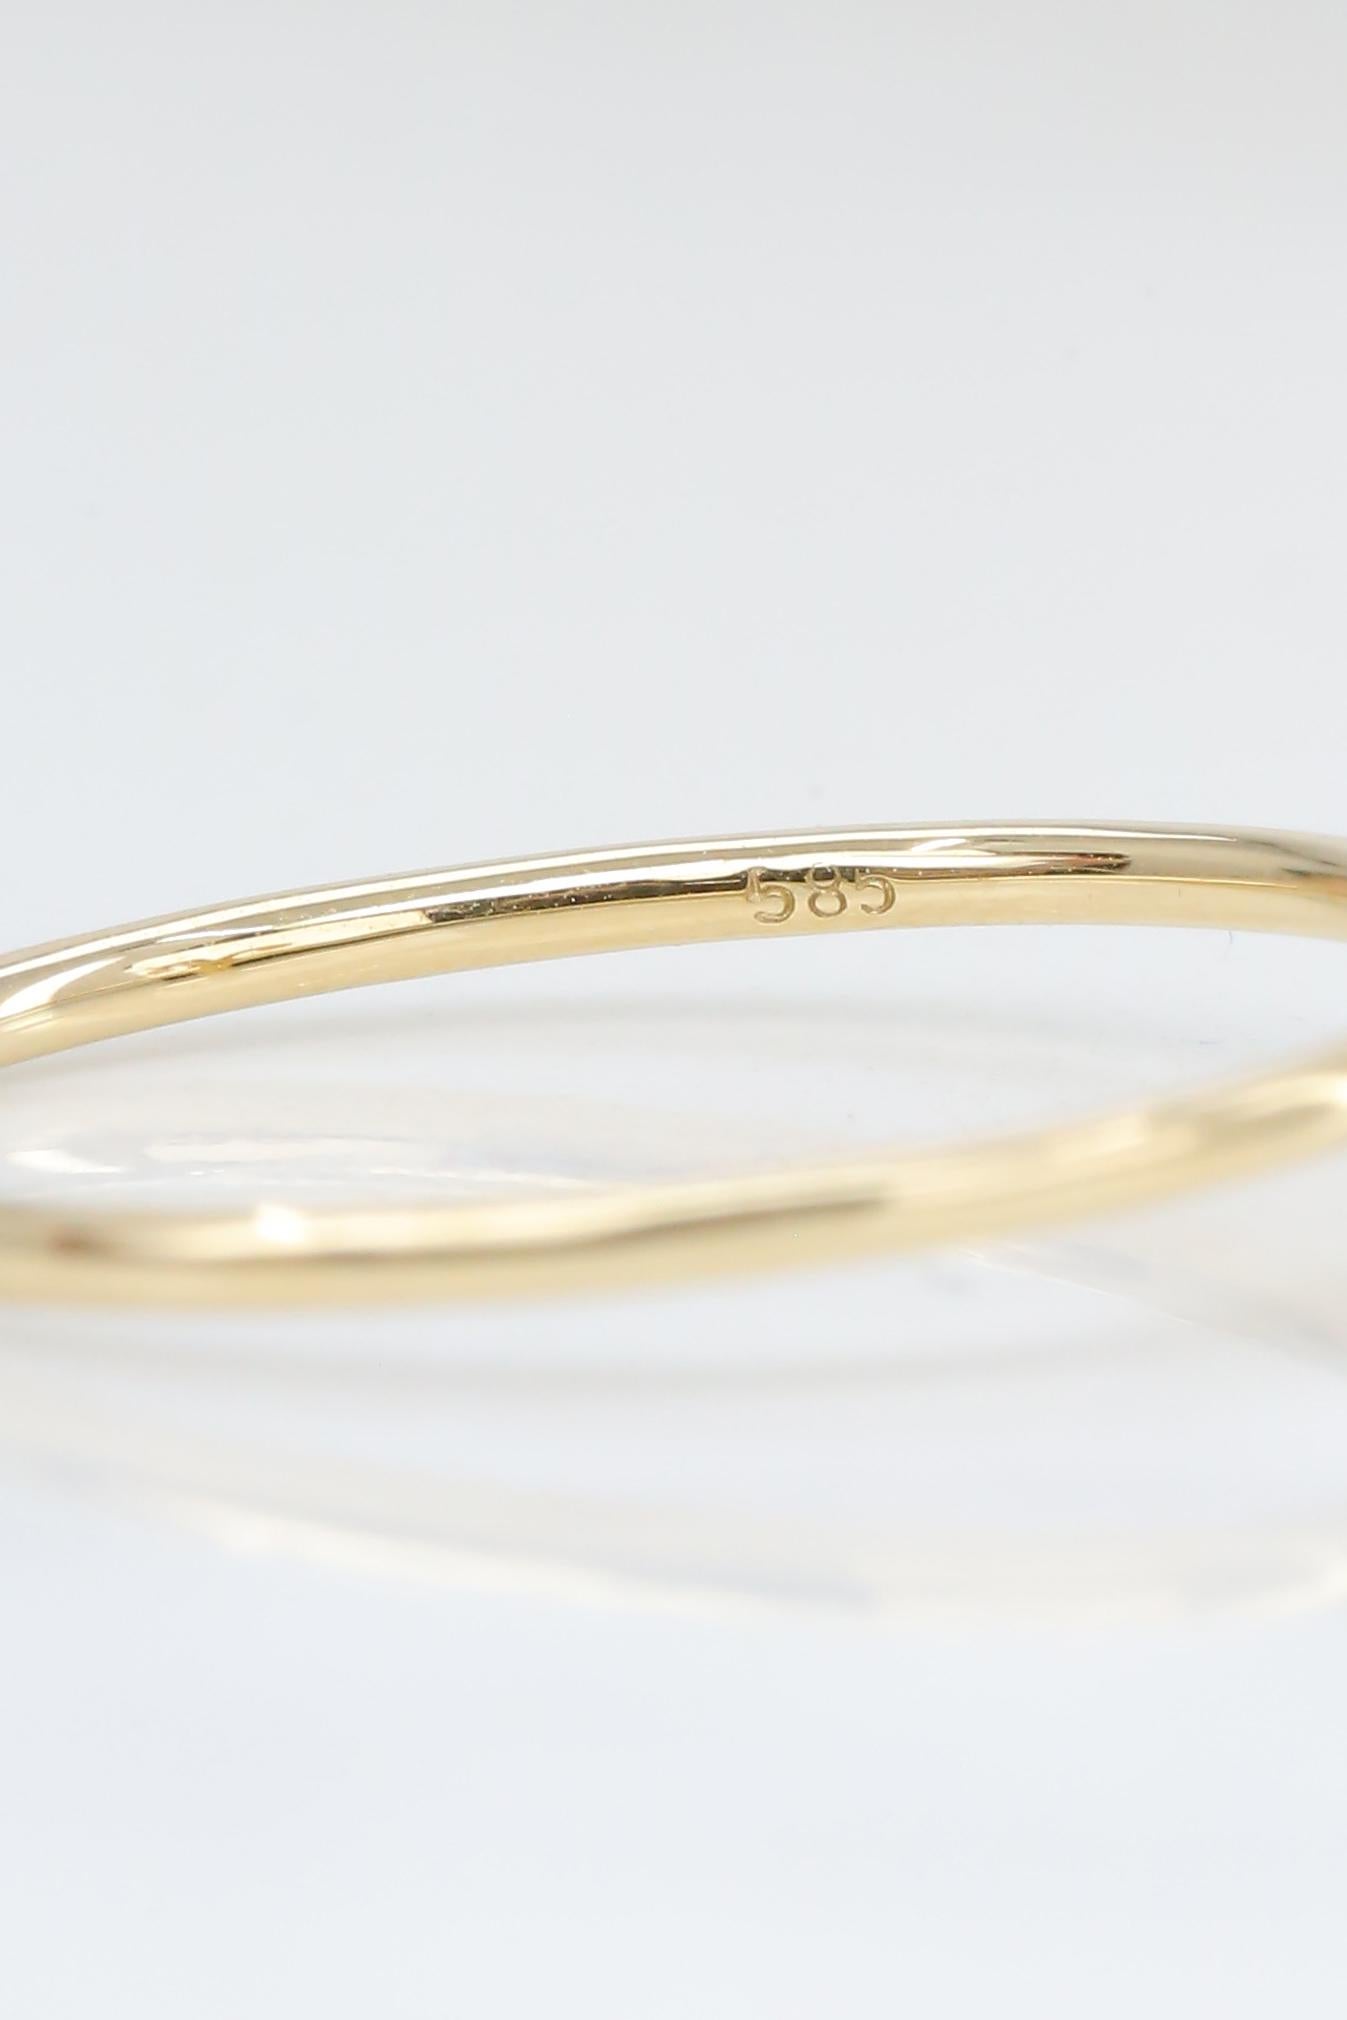 For Sale:  14K Gold Aquarius Ring, Aquarius Sign Gold Ring 8